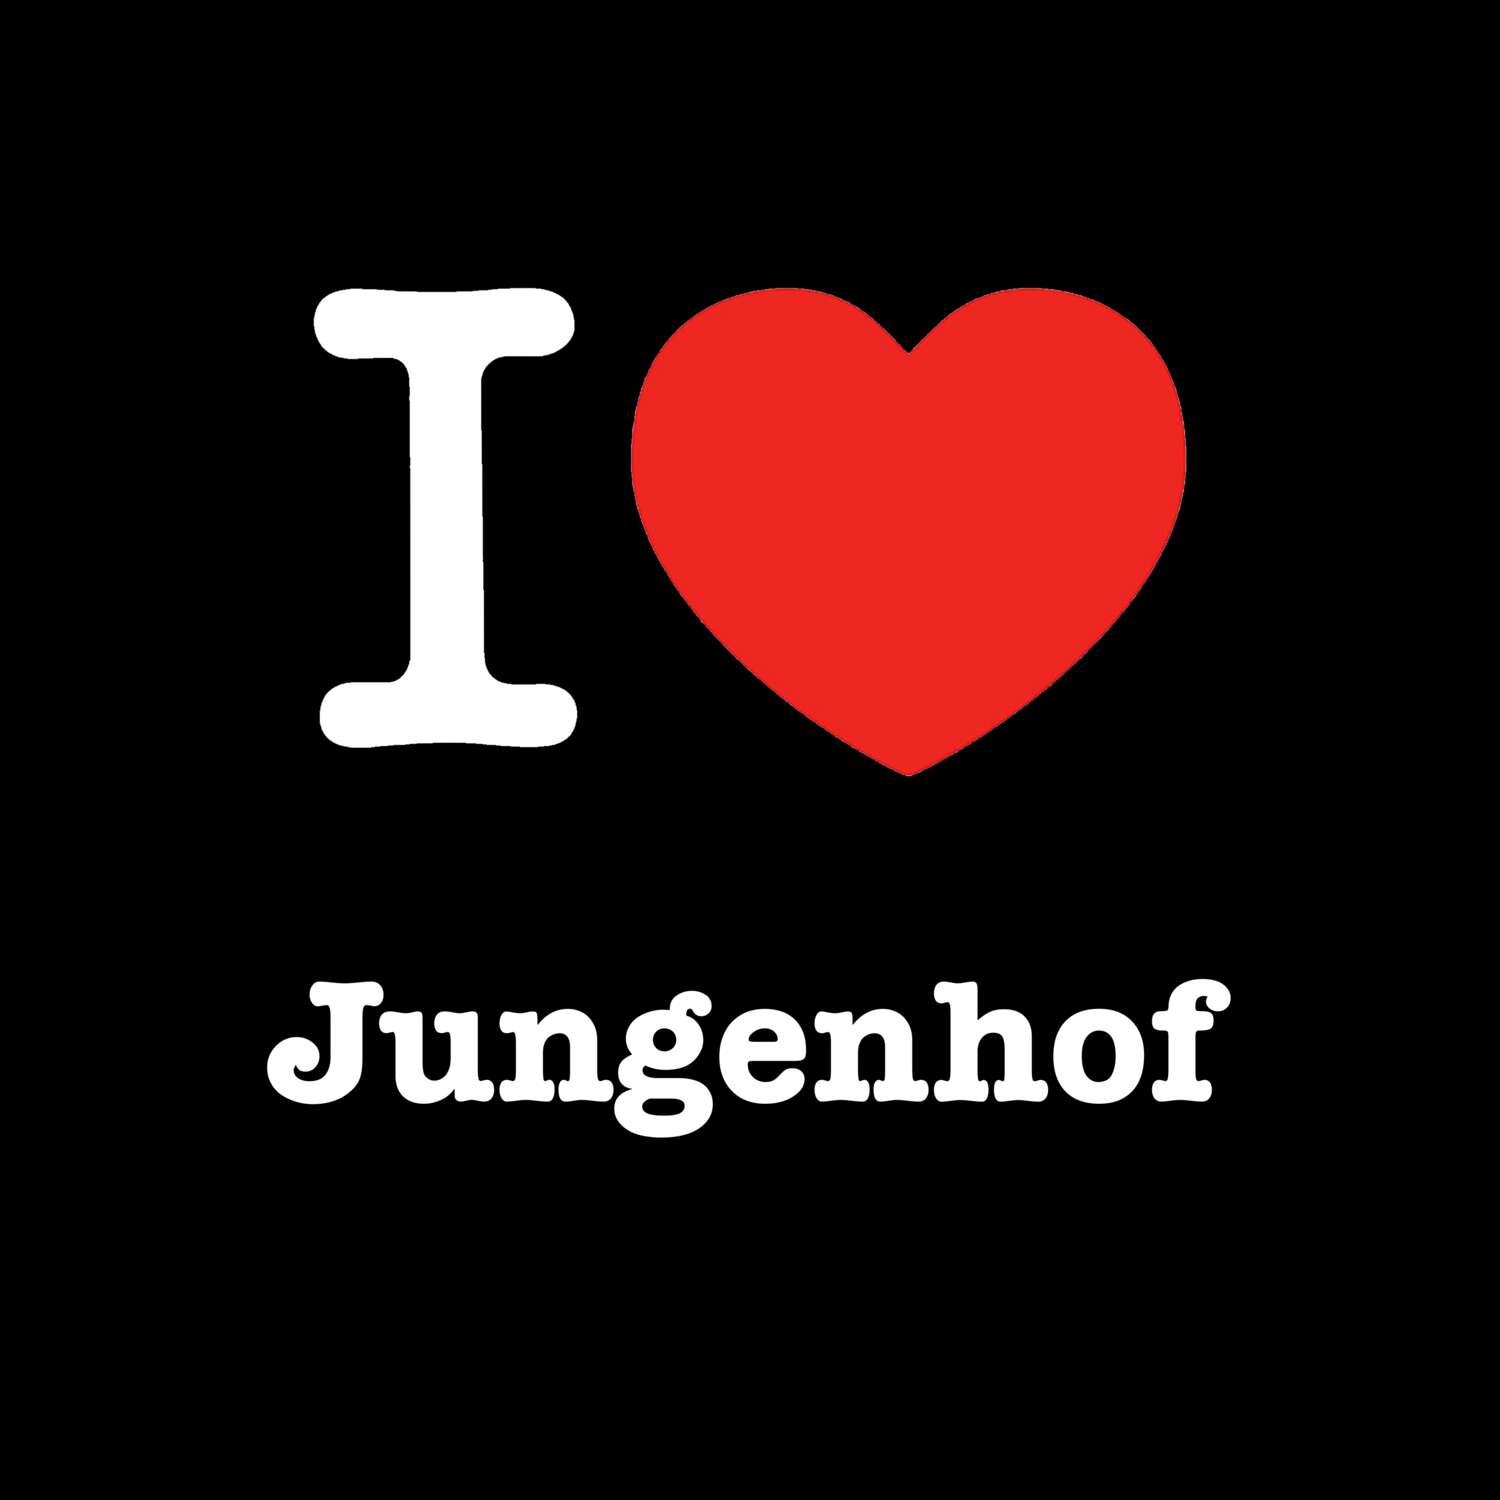 Jungenhof T-Shirt »I love«